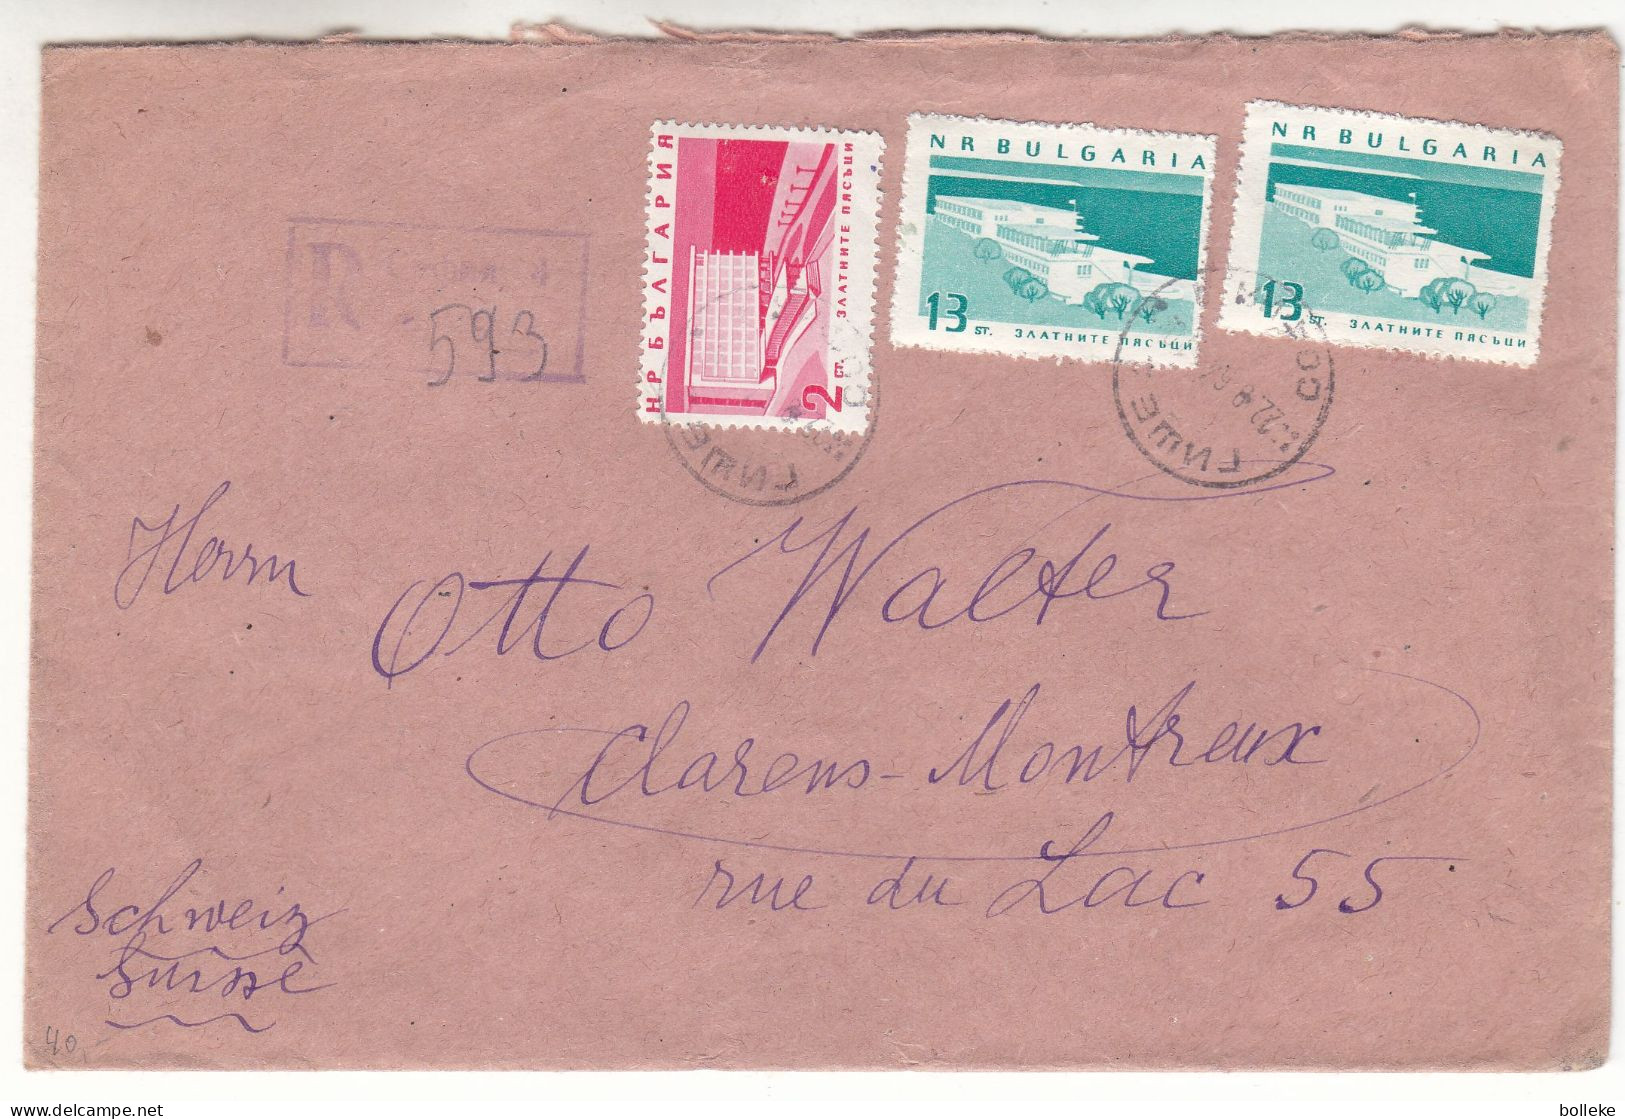 Bulgarie - Lettre Recom De 1964 - Oblit Sofia - Exp Vers Clarens Montreux - - Lettres & Documents